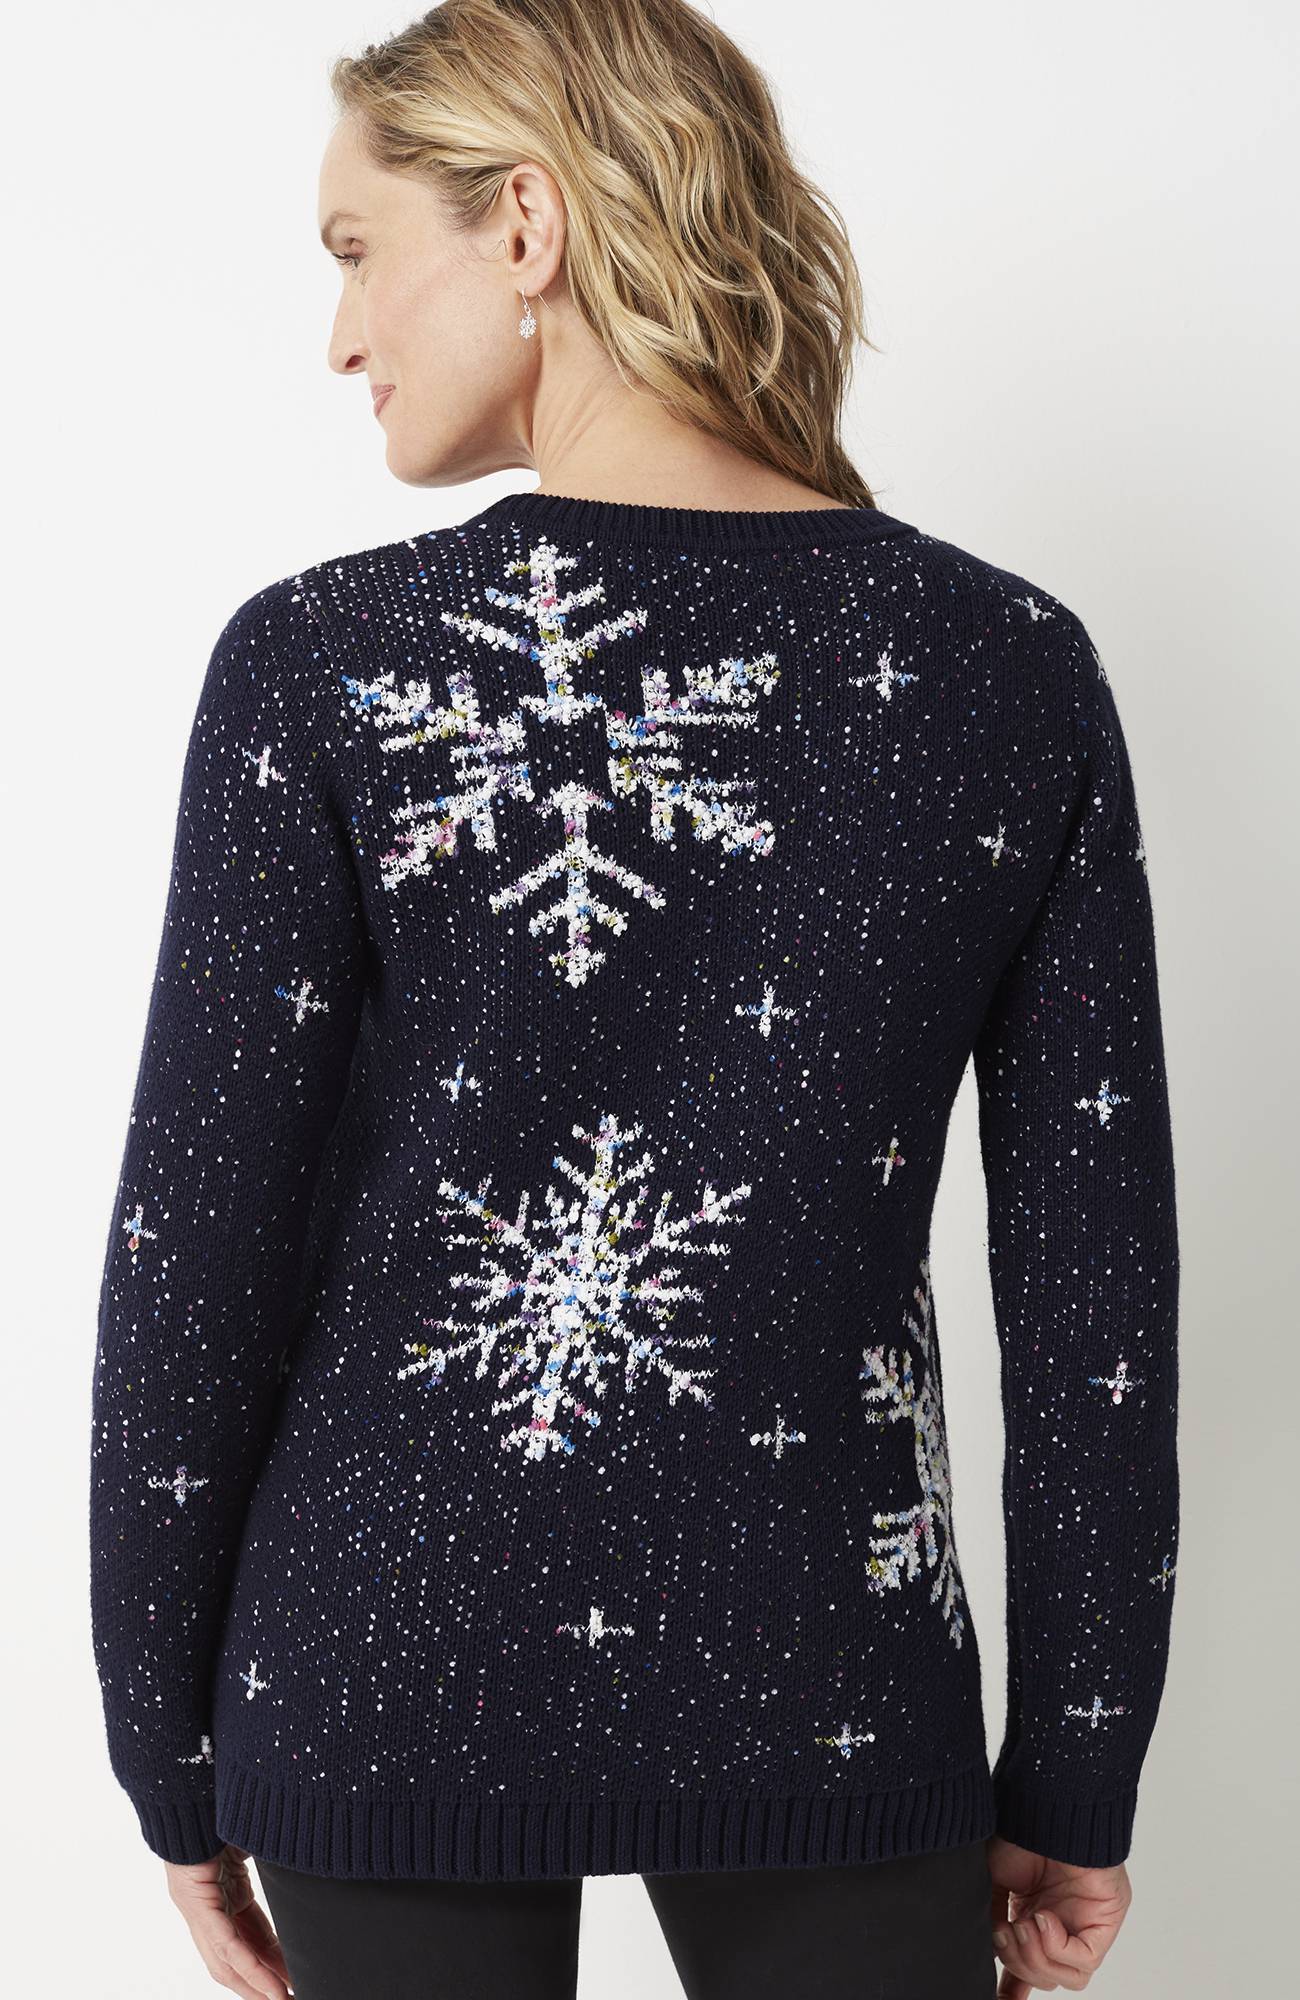 Tweeded Snowflake Sweater